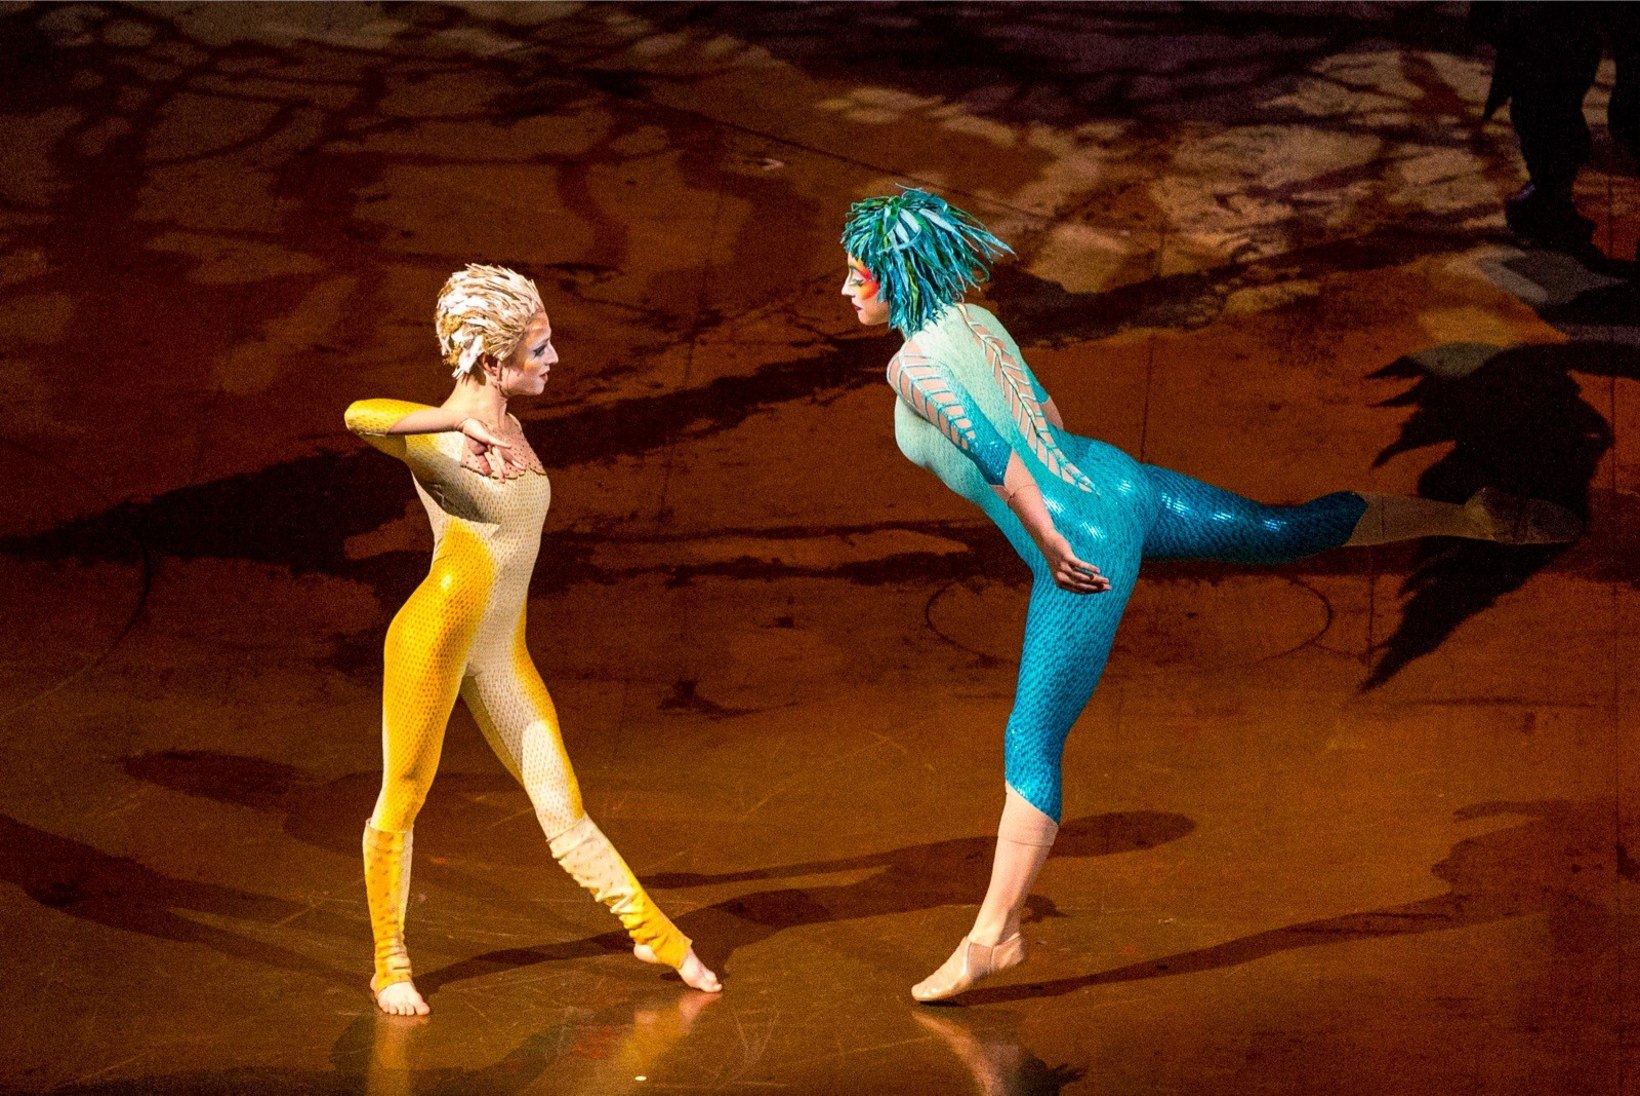 GALERII | Vaata hetki Cirque du Soleil' imelisest etendusest Tallinnas!